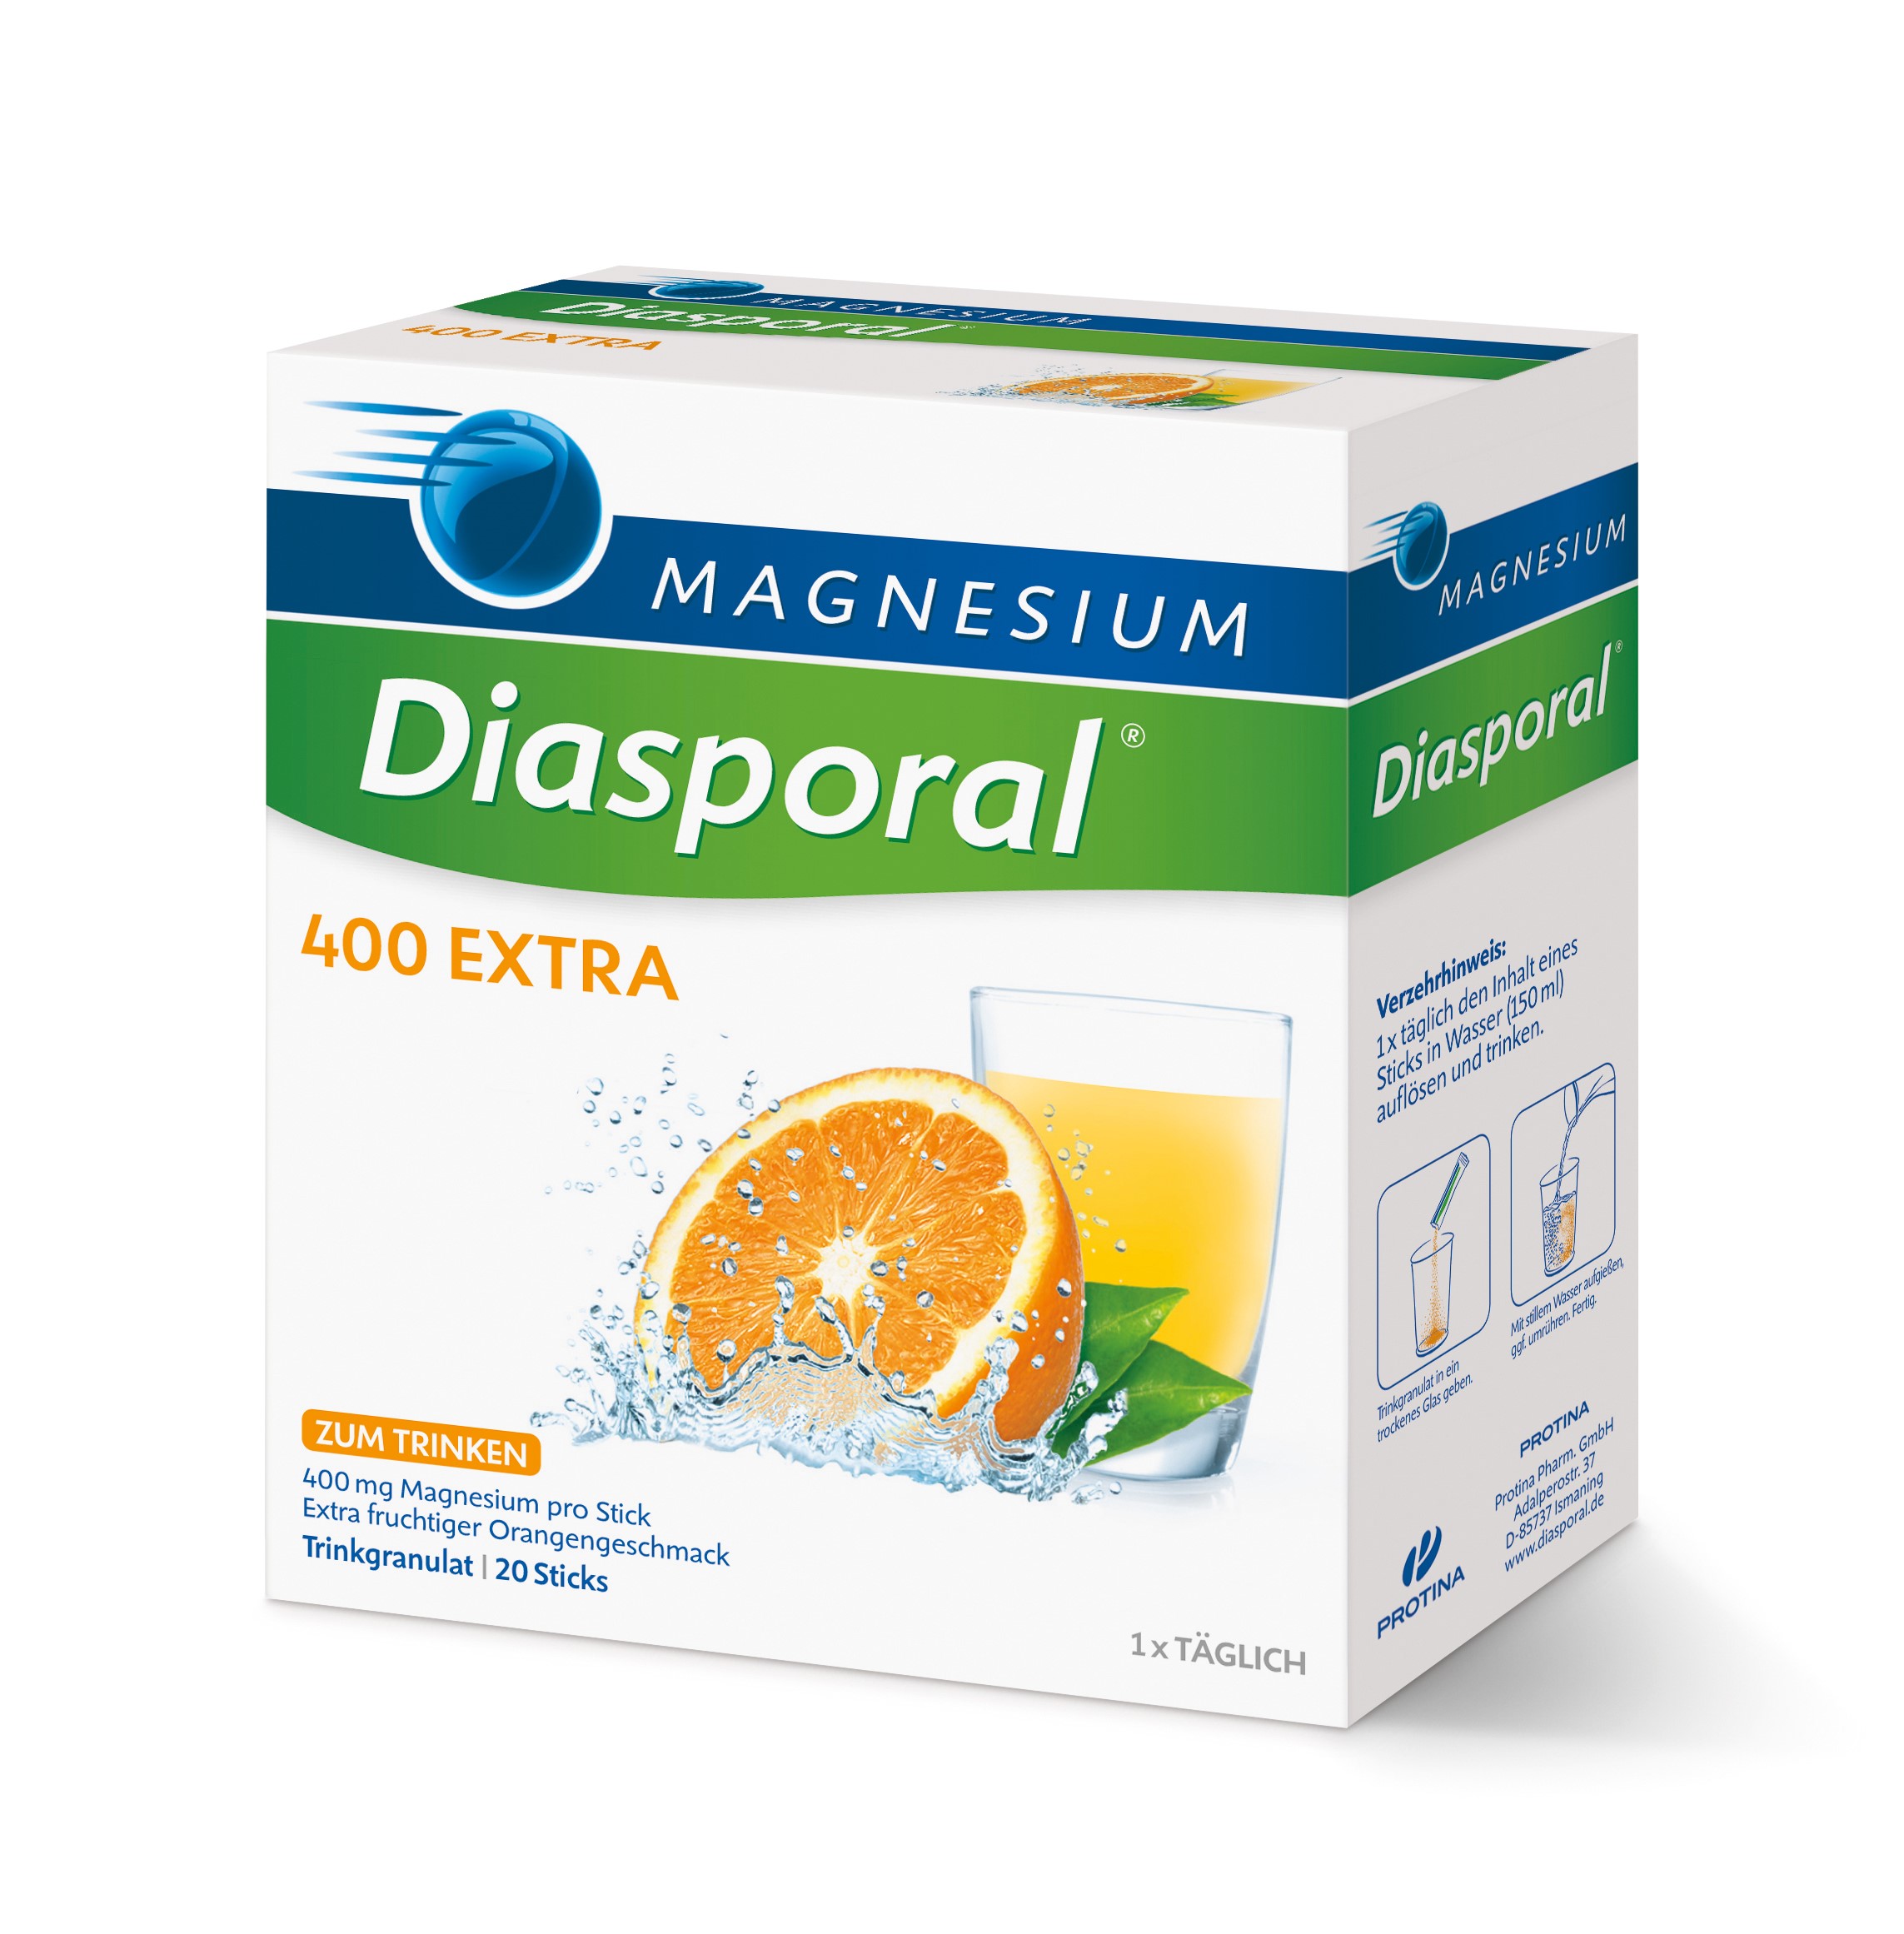 Magnesium Diasporal 400; EXTRA Trinkgranulat